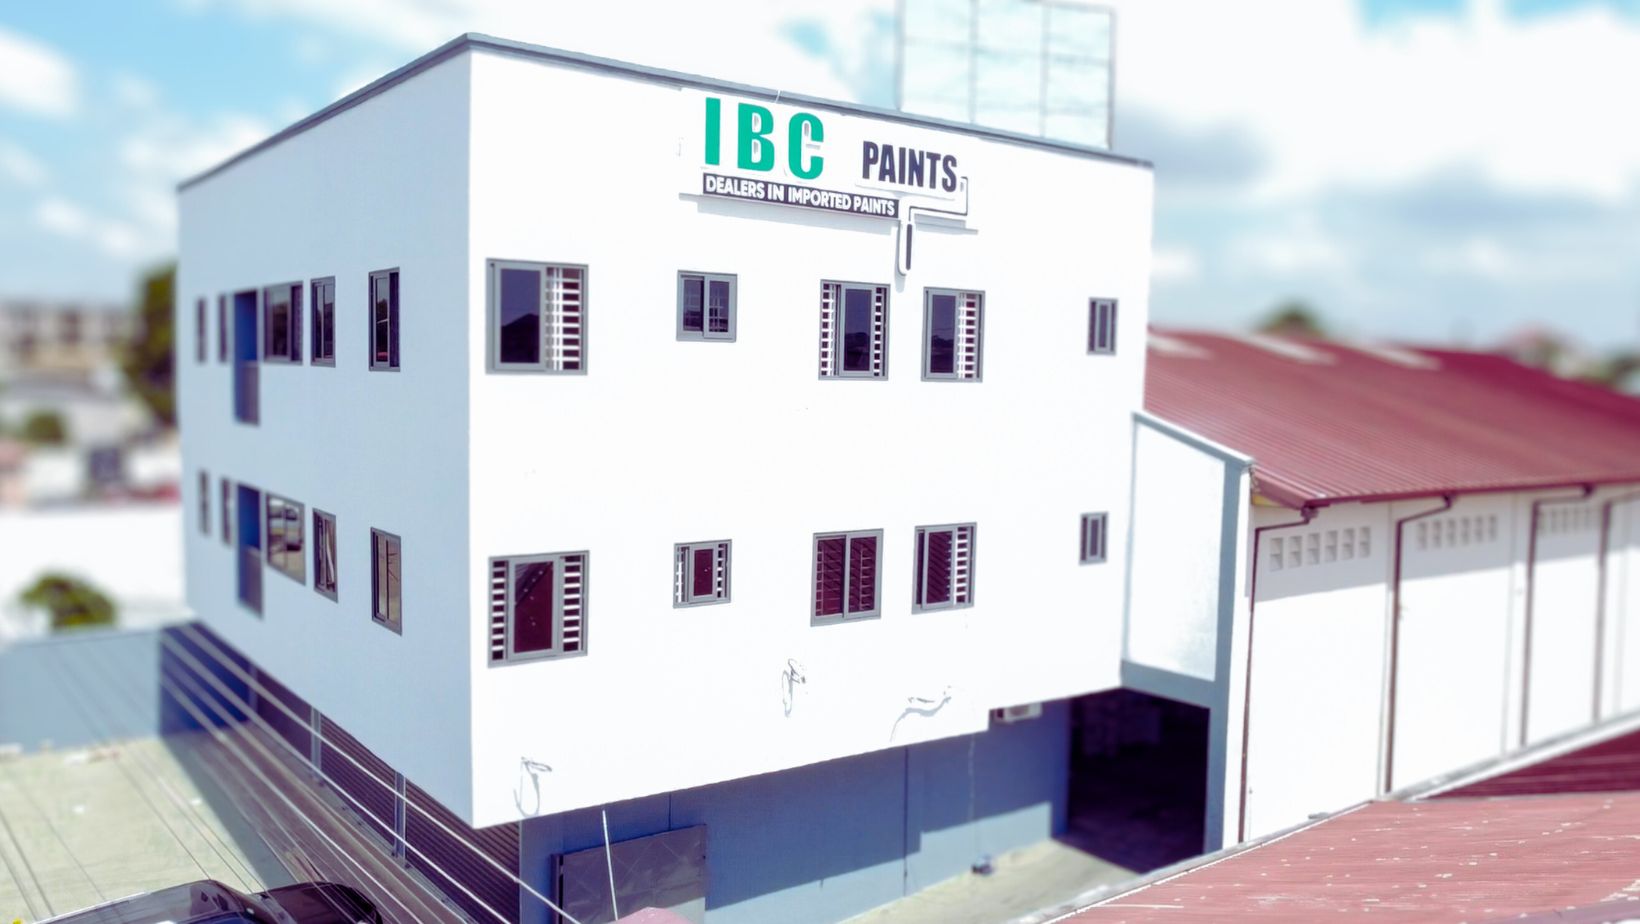 IBC Paints Office